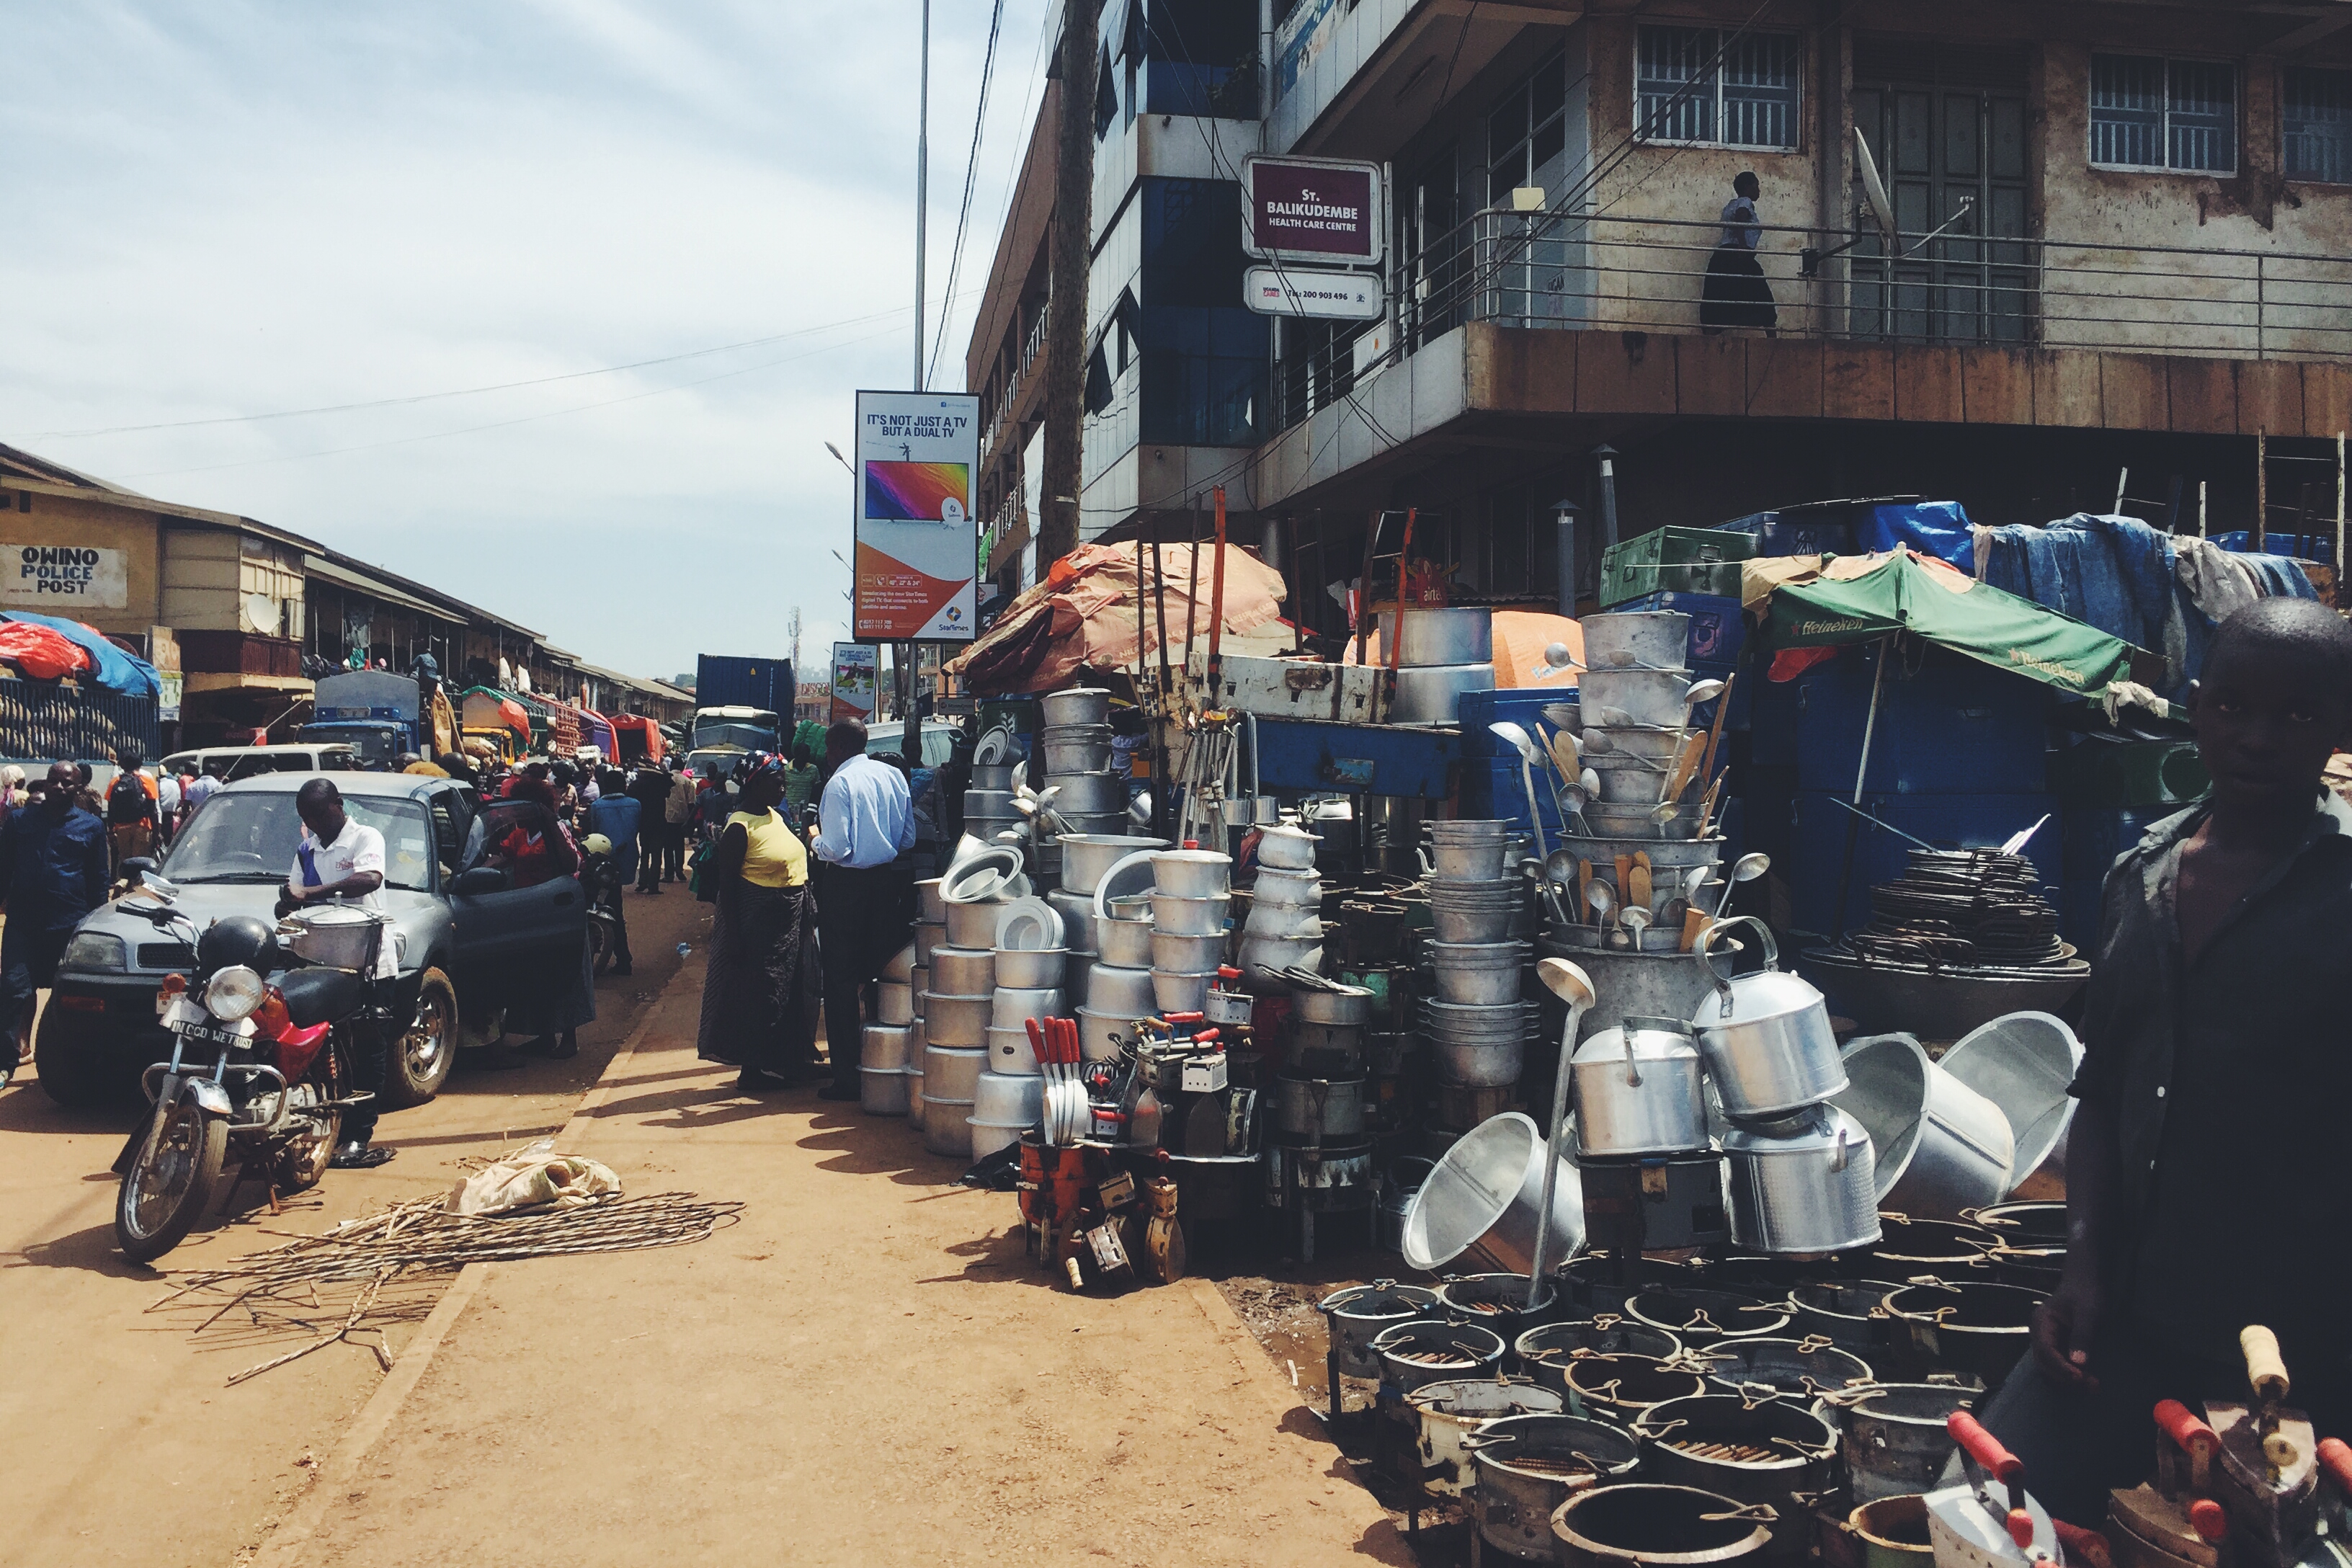 Kampala, Uganda- Owino Market